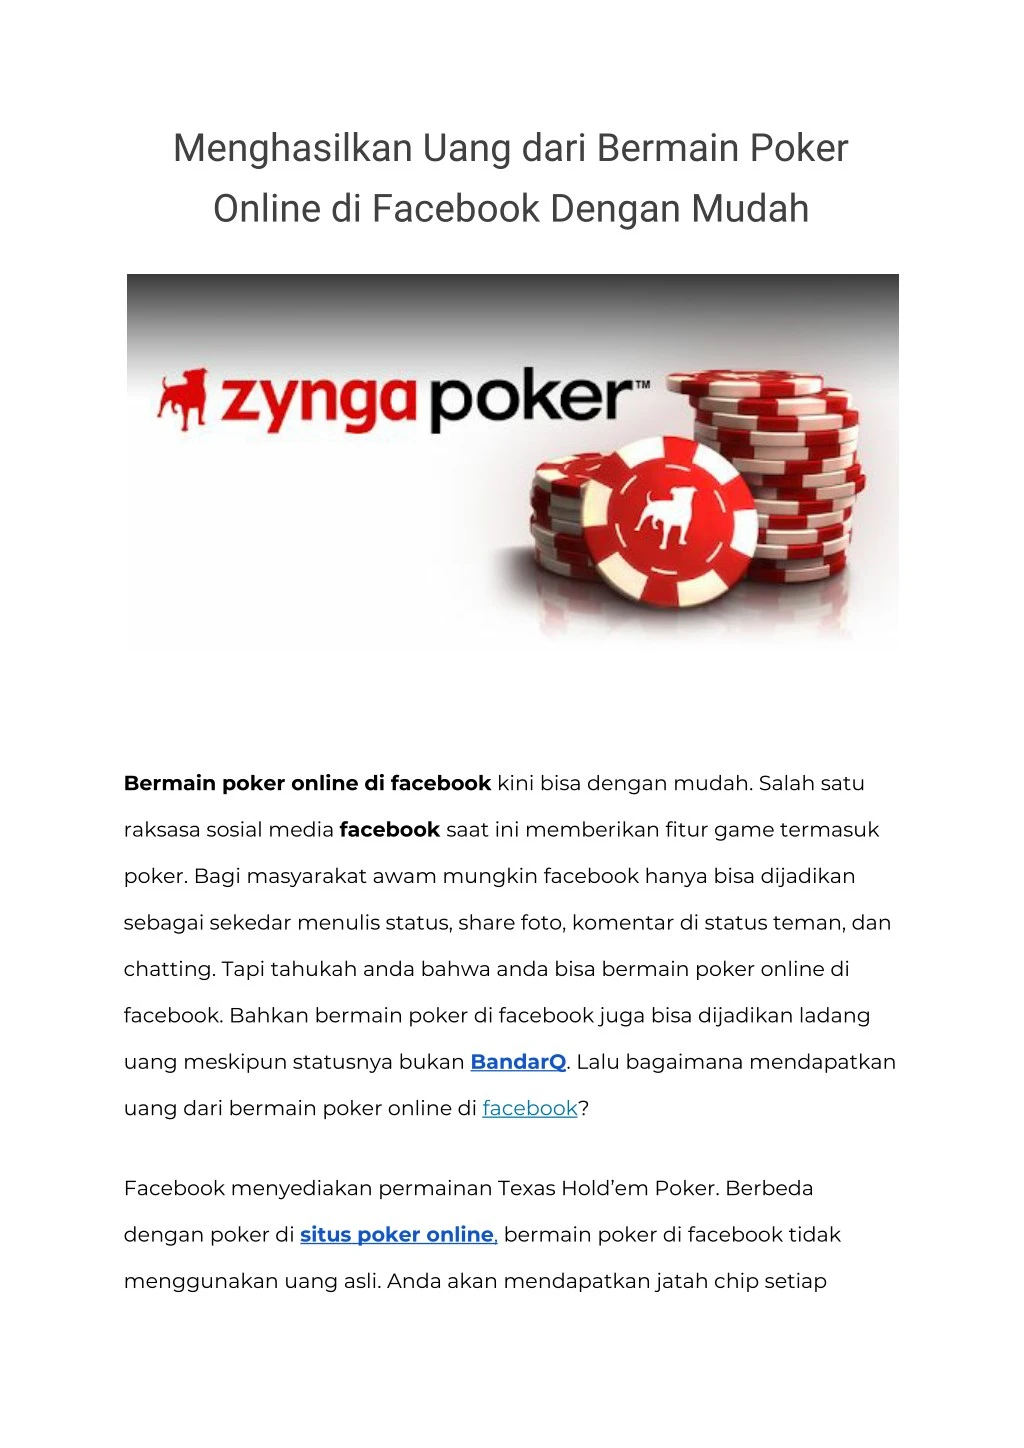 menghasilkan uang dari bermain poker online n.